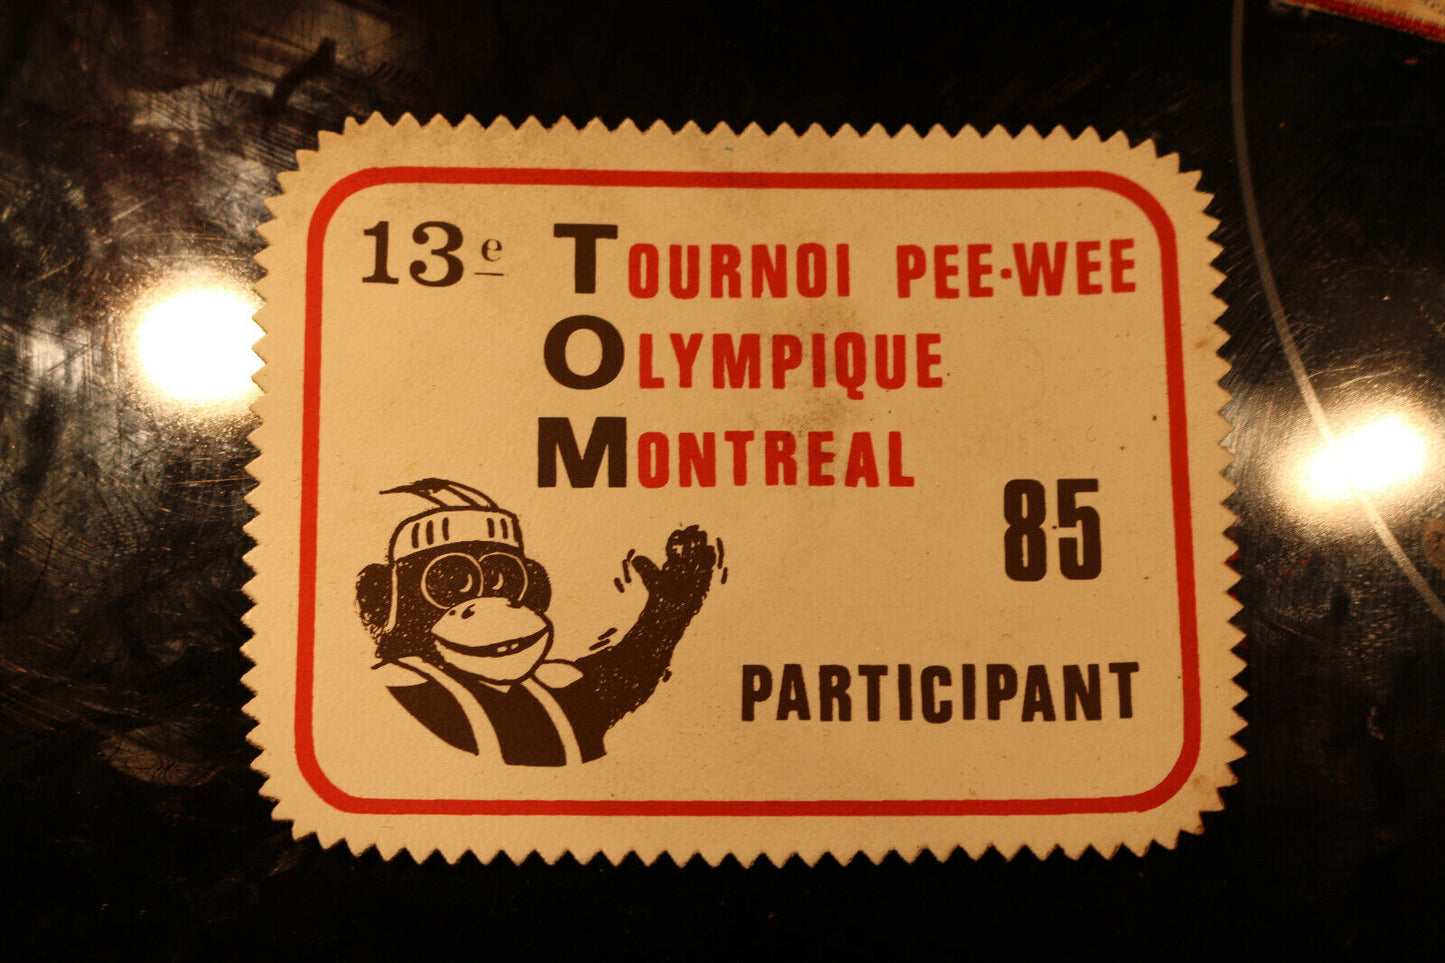 Vintage Shoulder Patche Souvenir Pee-Wee Olympic Montréal Olympique Tournoi